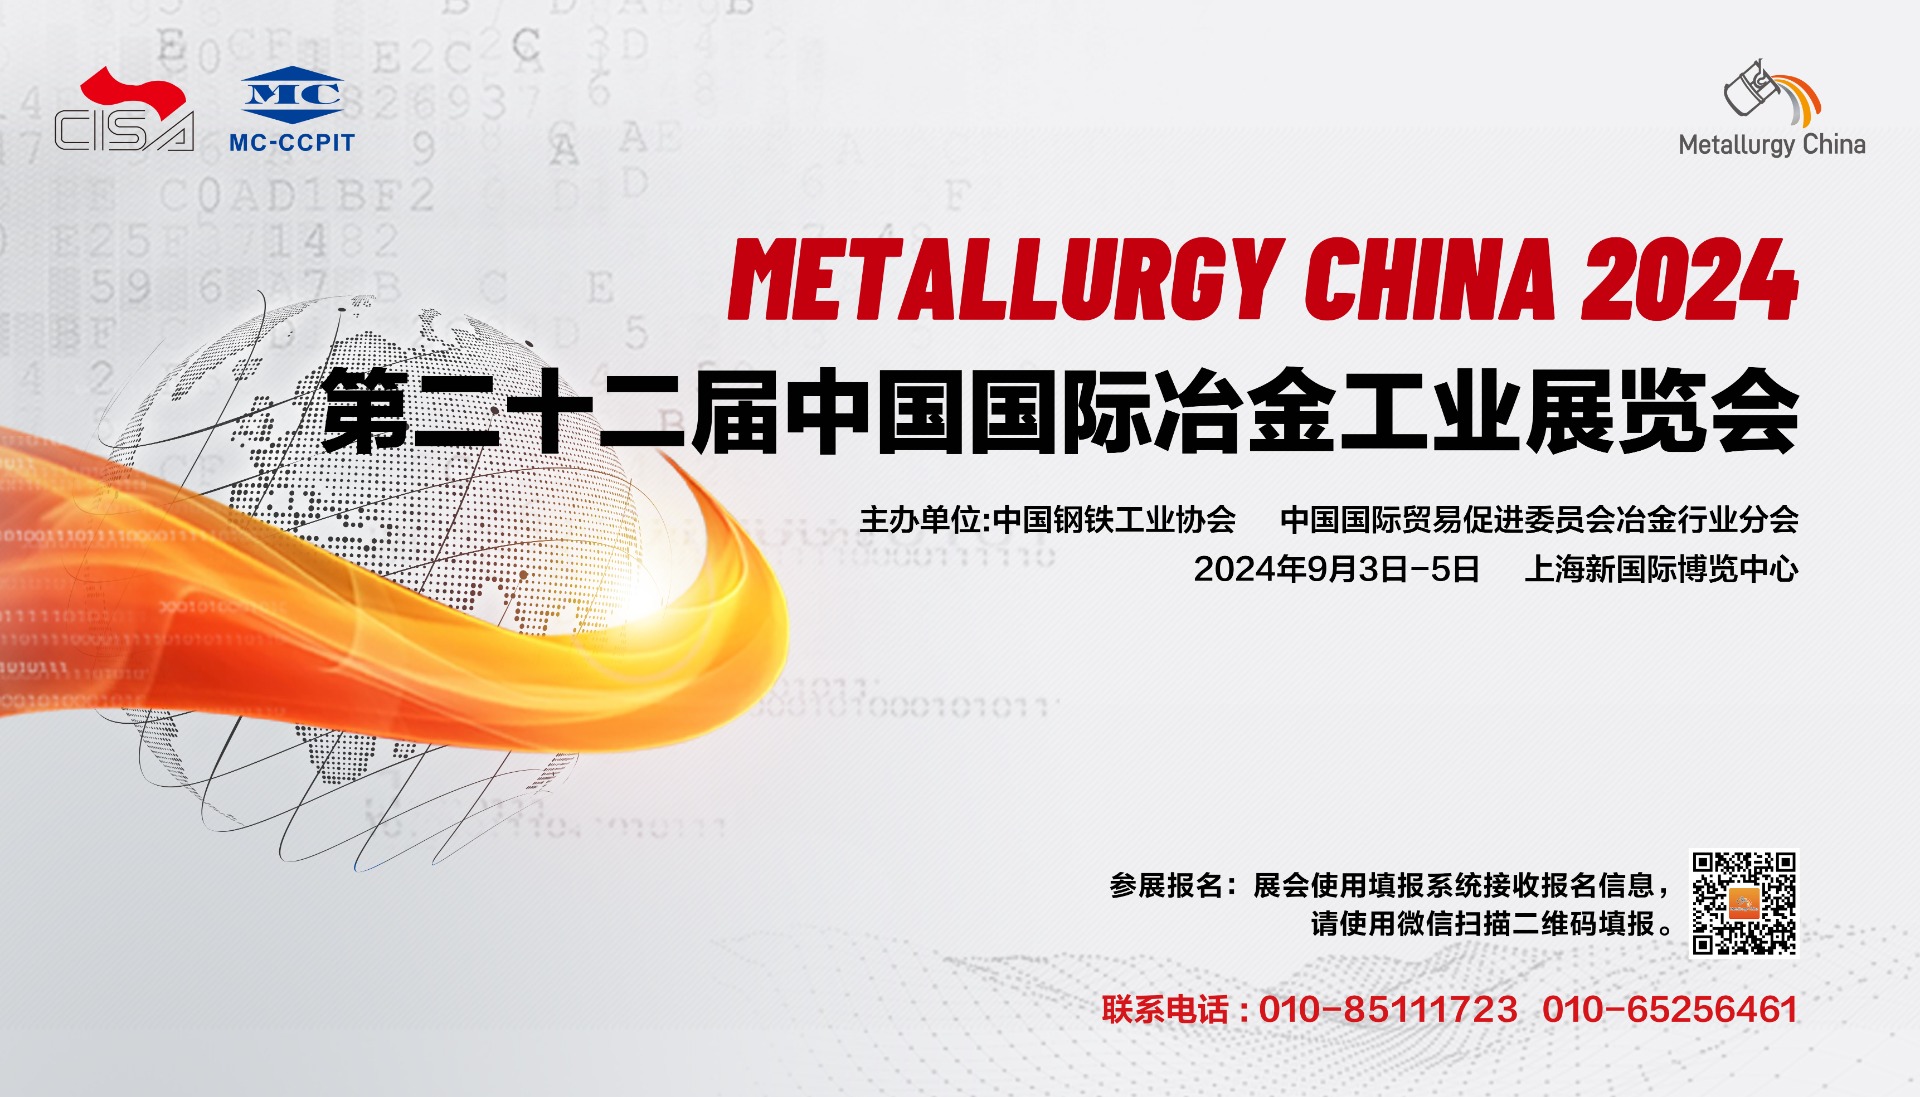 关于邀请参加“中国国际冶金工业展览会（第二十二届）”的通知